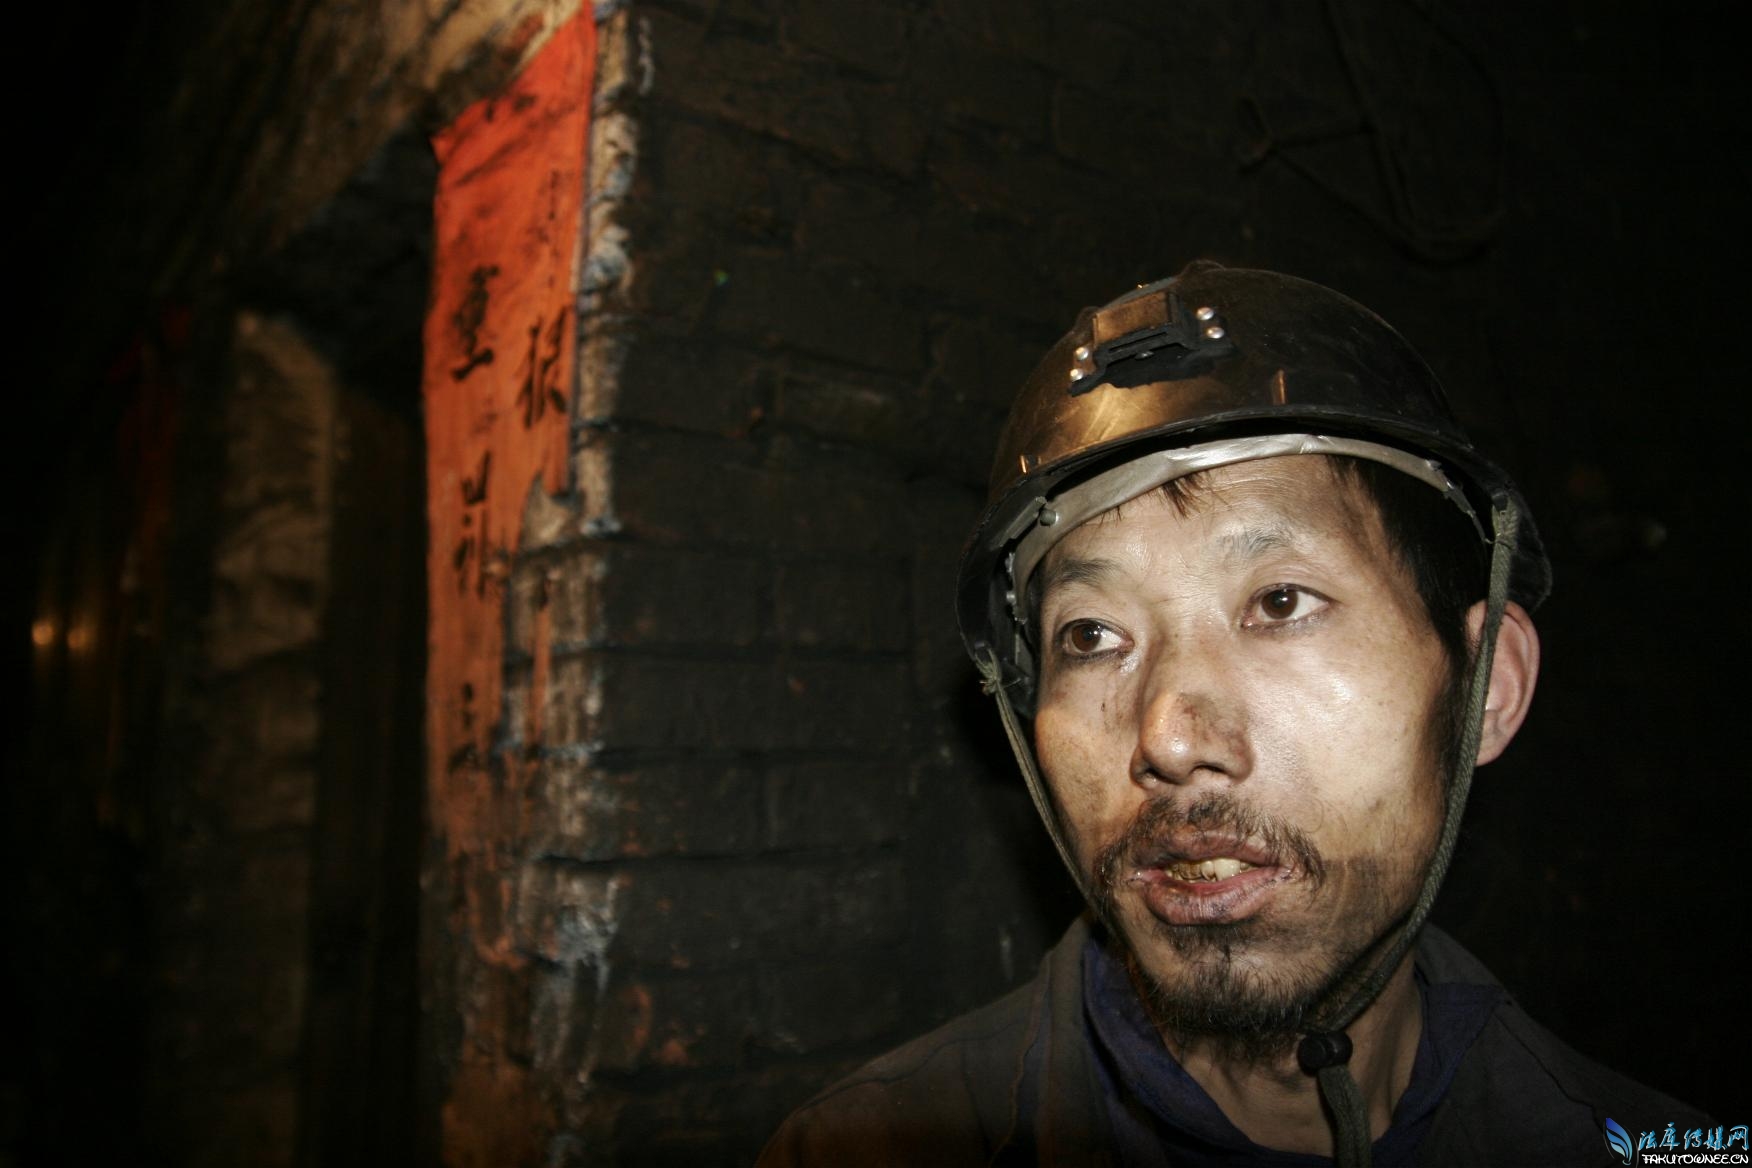 煤矿合法开采几年塌陷挖煤工人的工资能赚多少钱